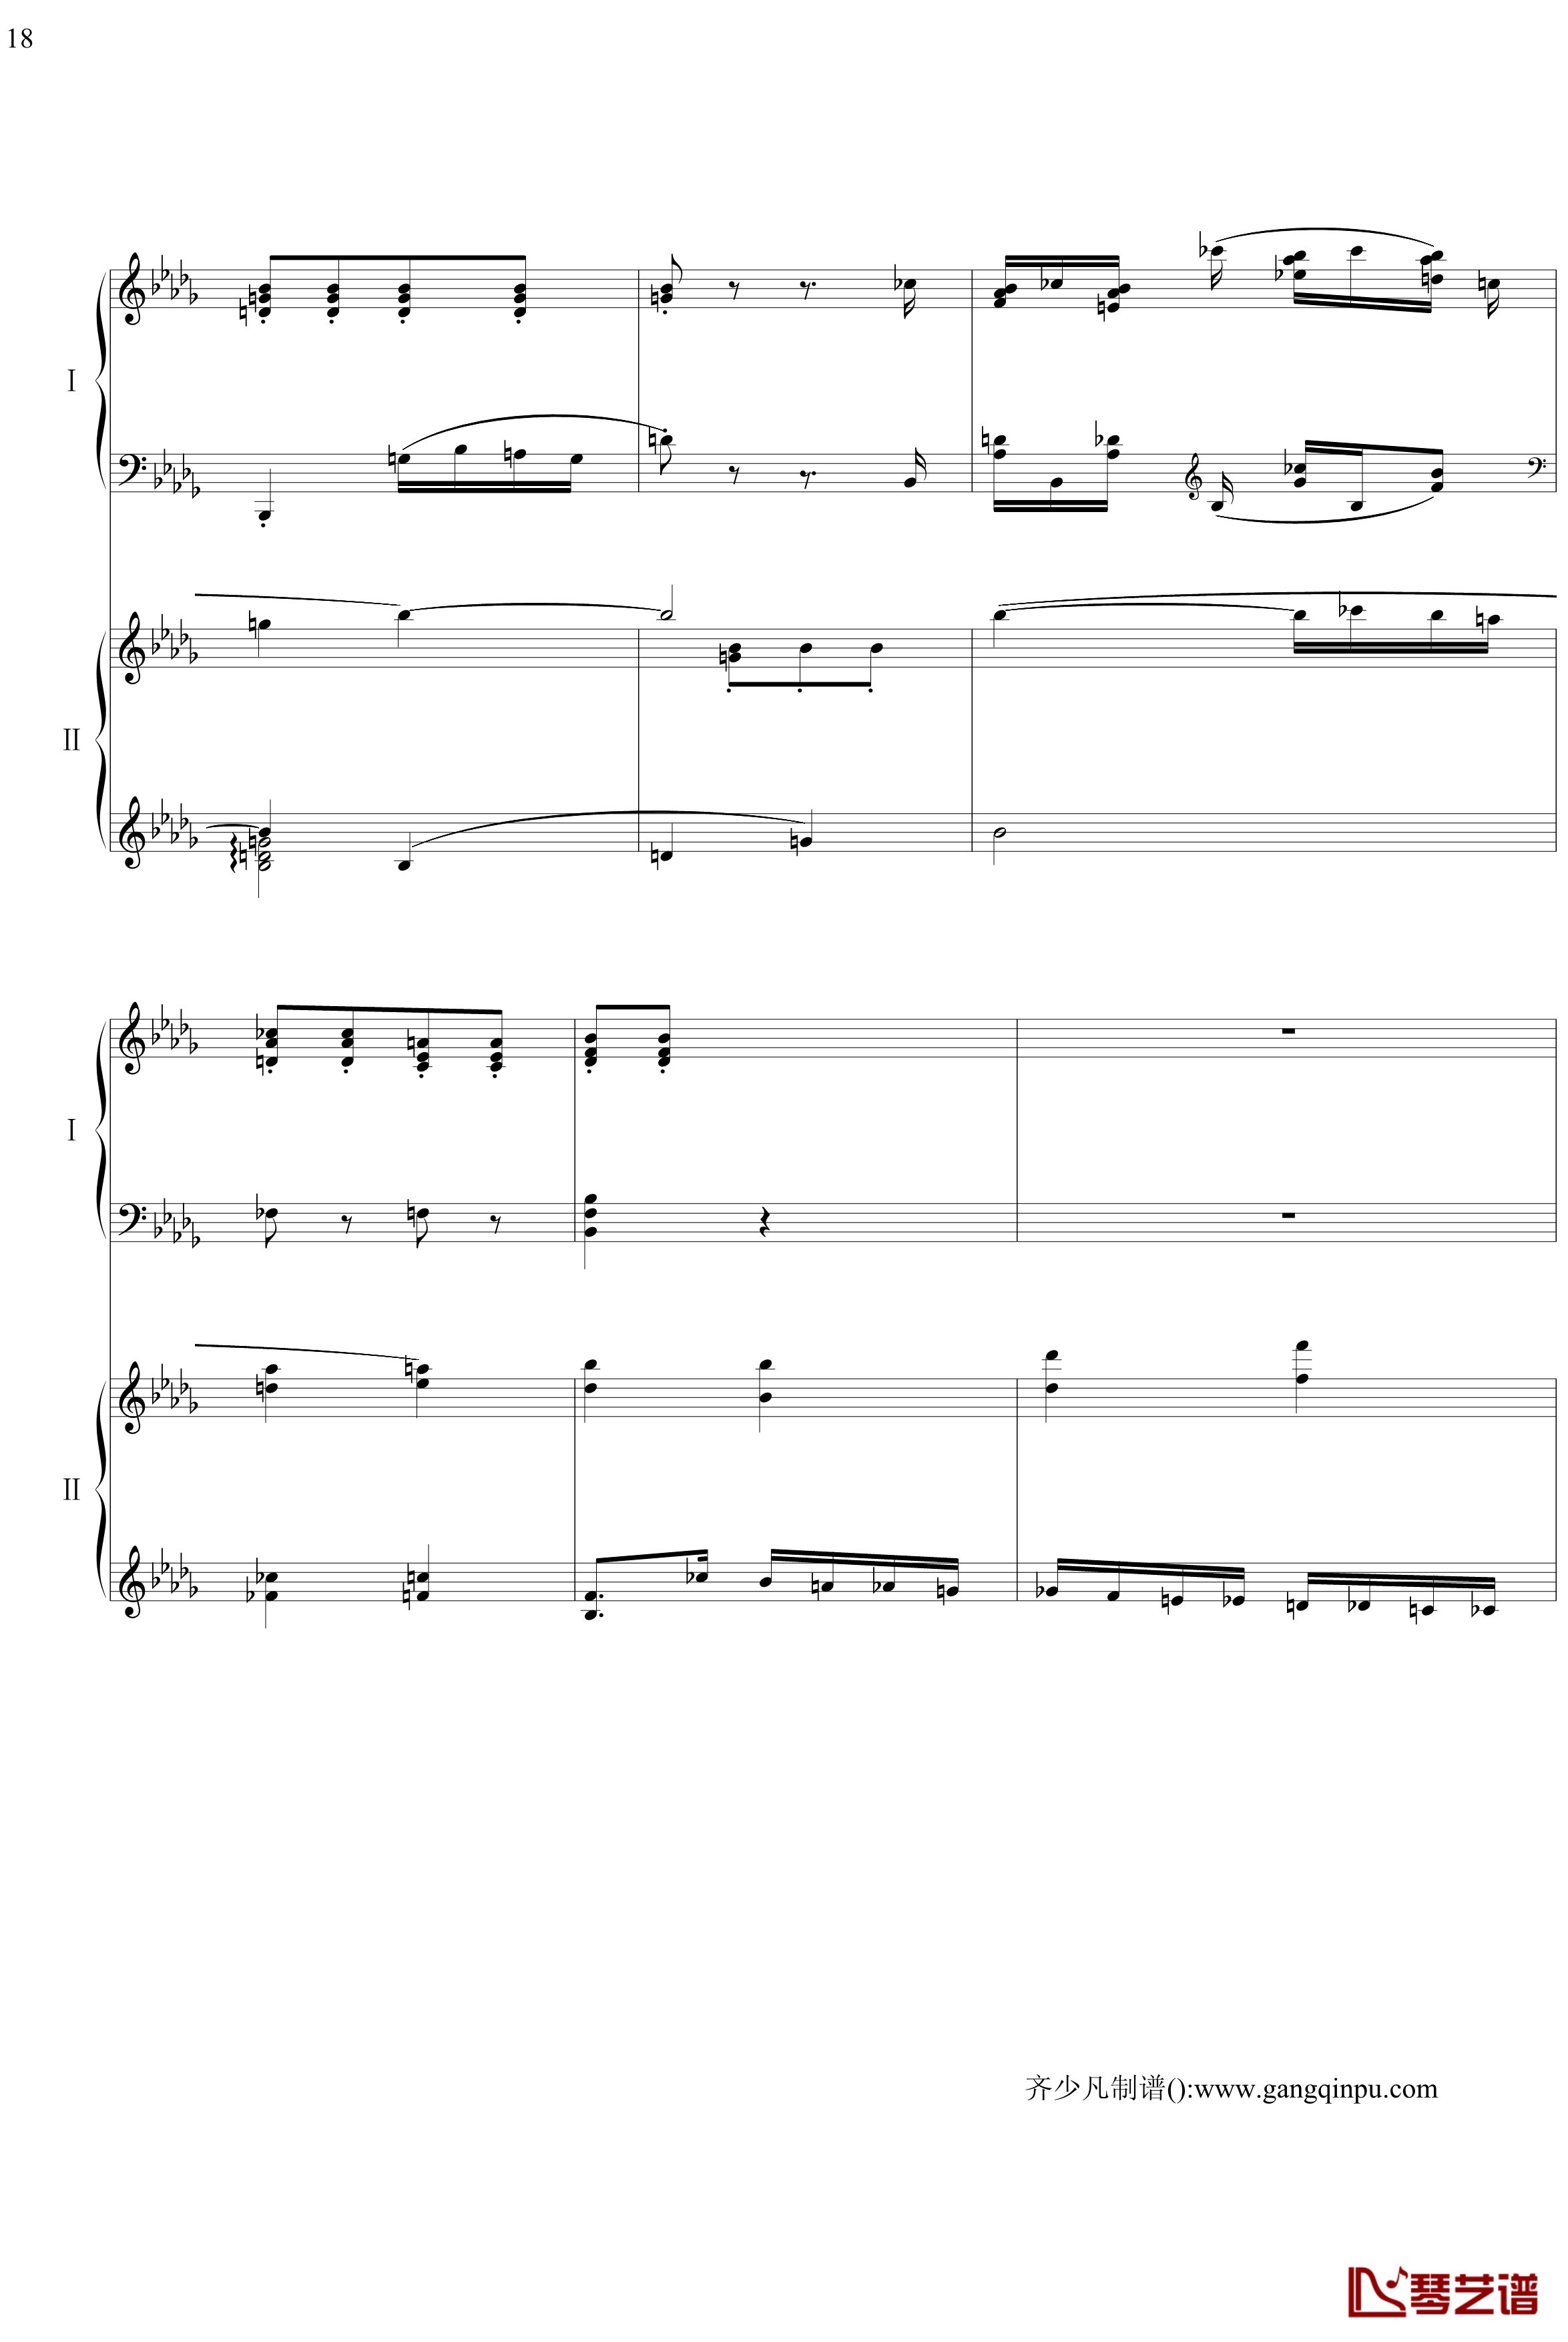 帕格尼尼主题狂想曲钢琴谱-11~18变奏-拉赫马尼若夫18